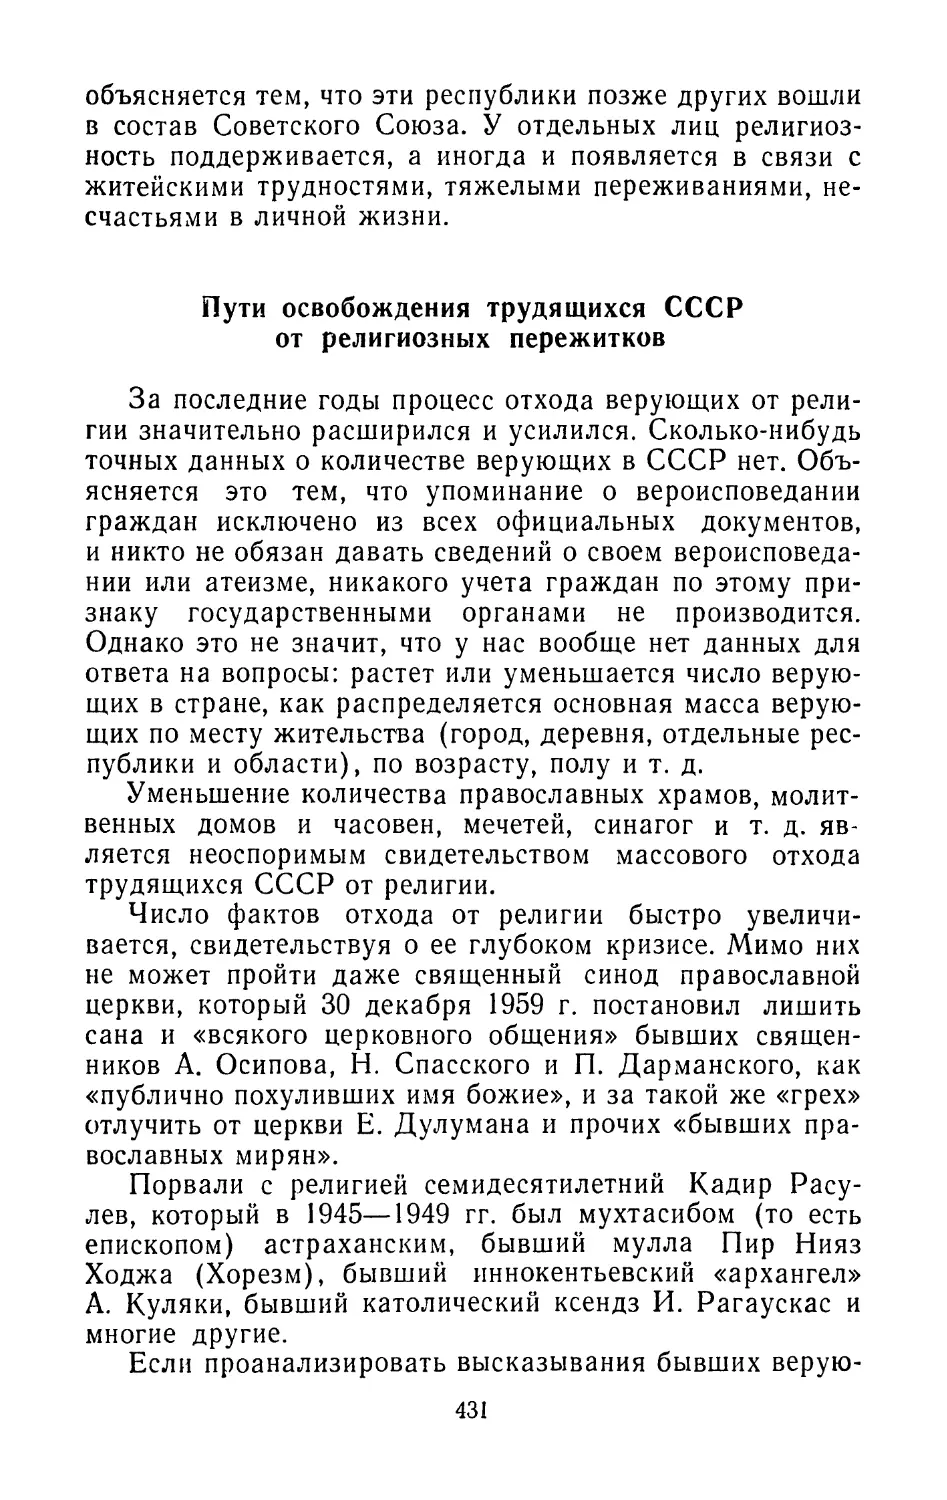 Пути освобождения трудящихся СССР от религиозных пережитков